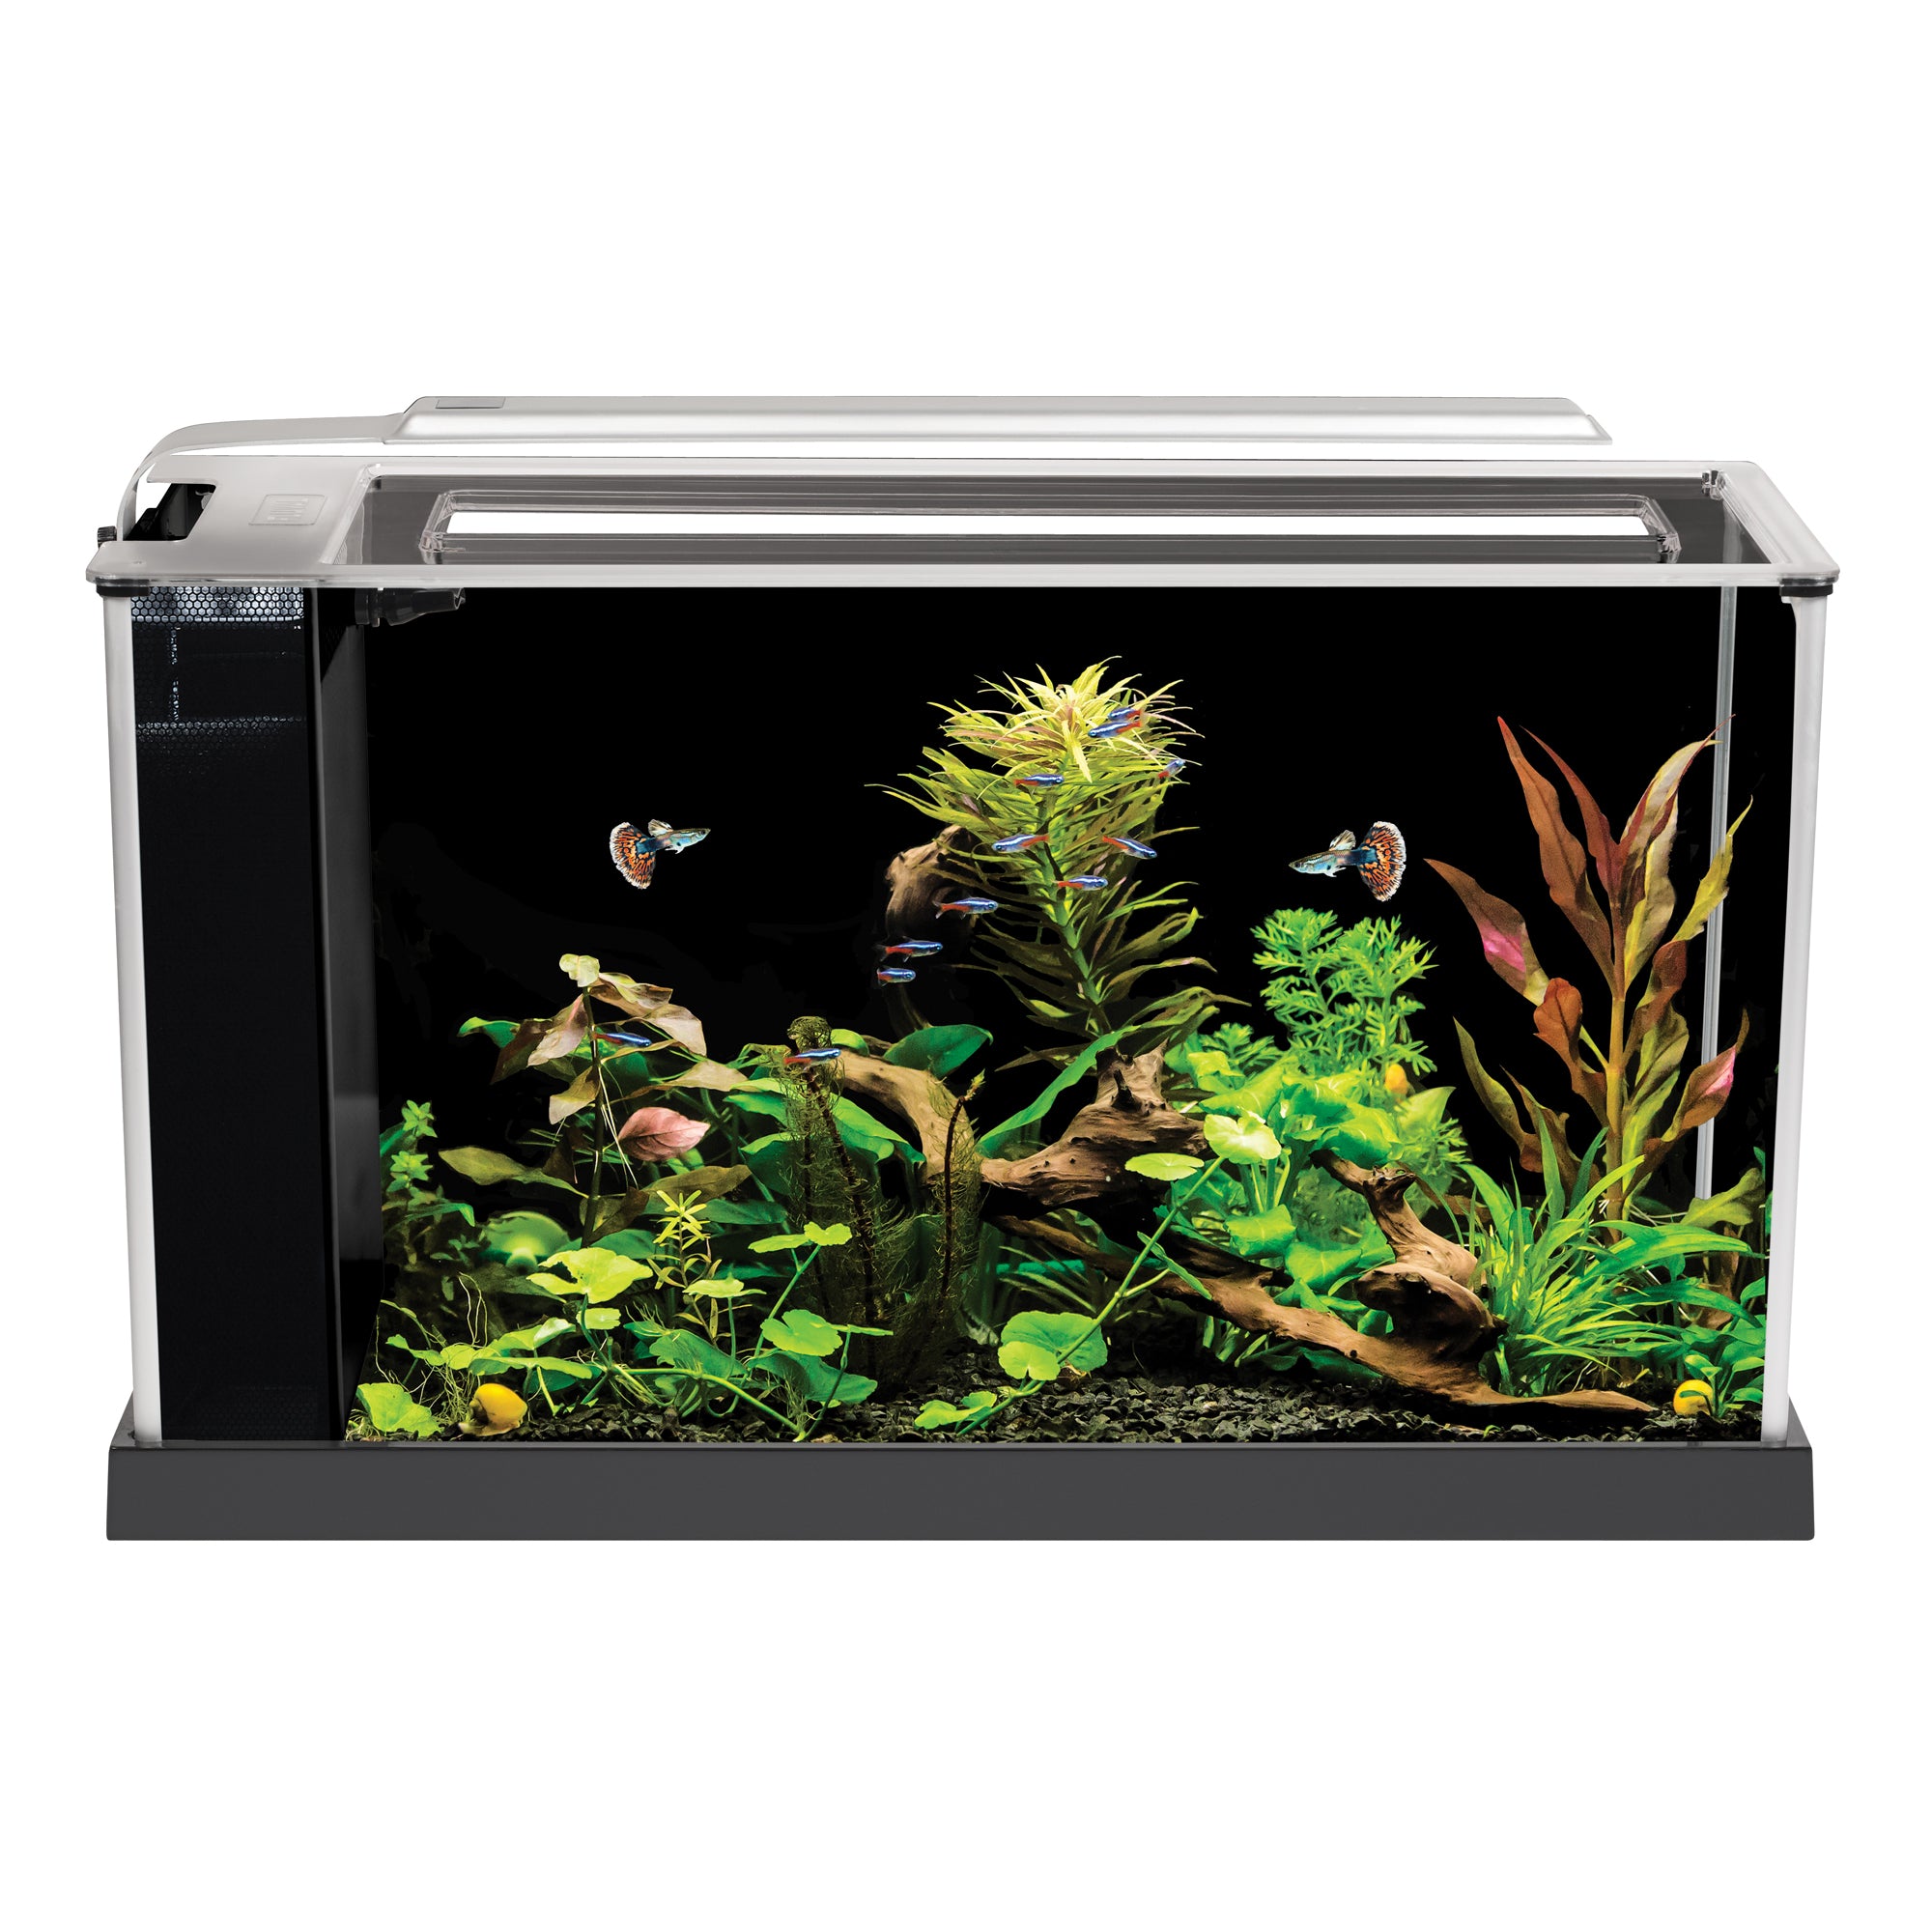 Fluval Spec 16 Gallon Aquarium Fish Tank For Sale | 2.5 Gallon Aquarium | 2.5 Nano Fish Tank | Nano Aquarium Fish Tank | Best Beginner Aquarium Tank for Betta Fish | Best Beginner Fish Tank for Nano Fish